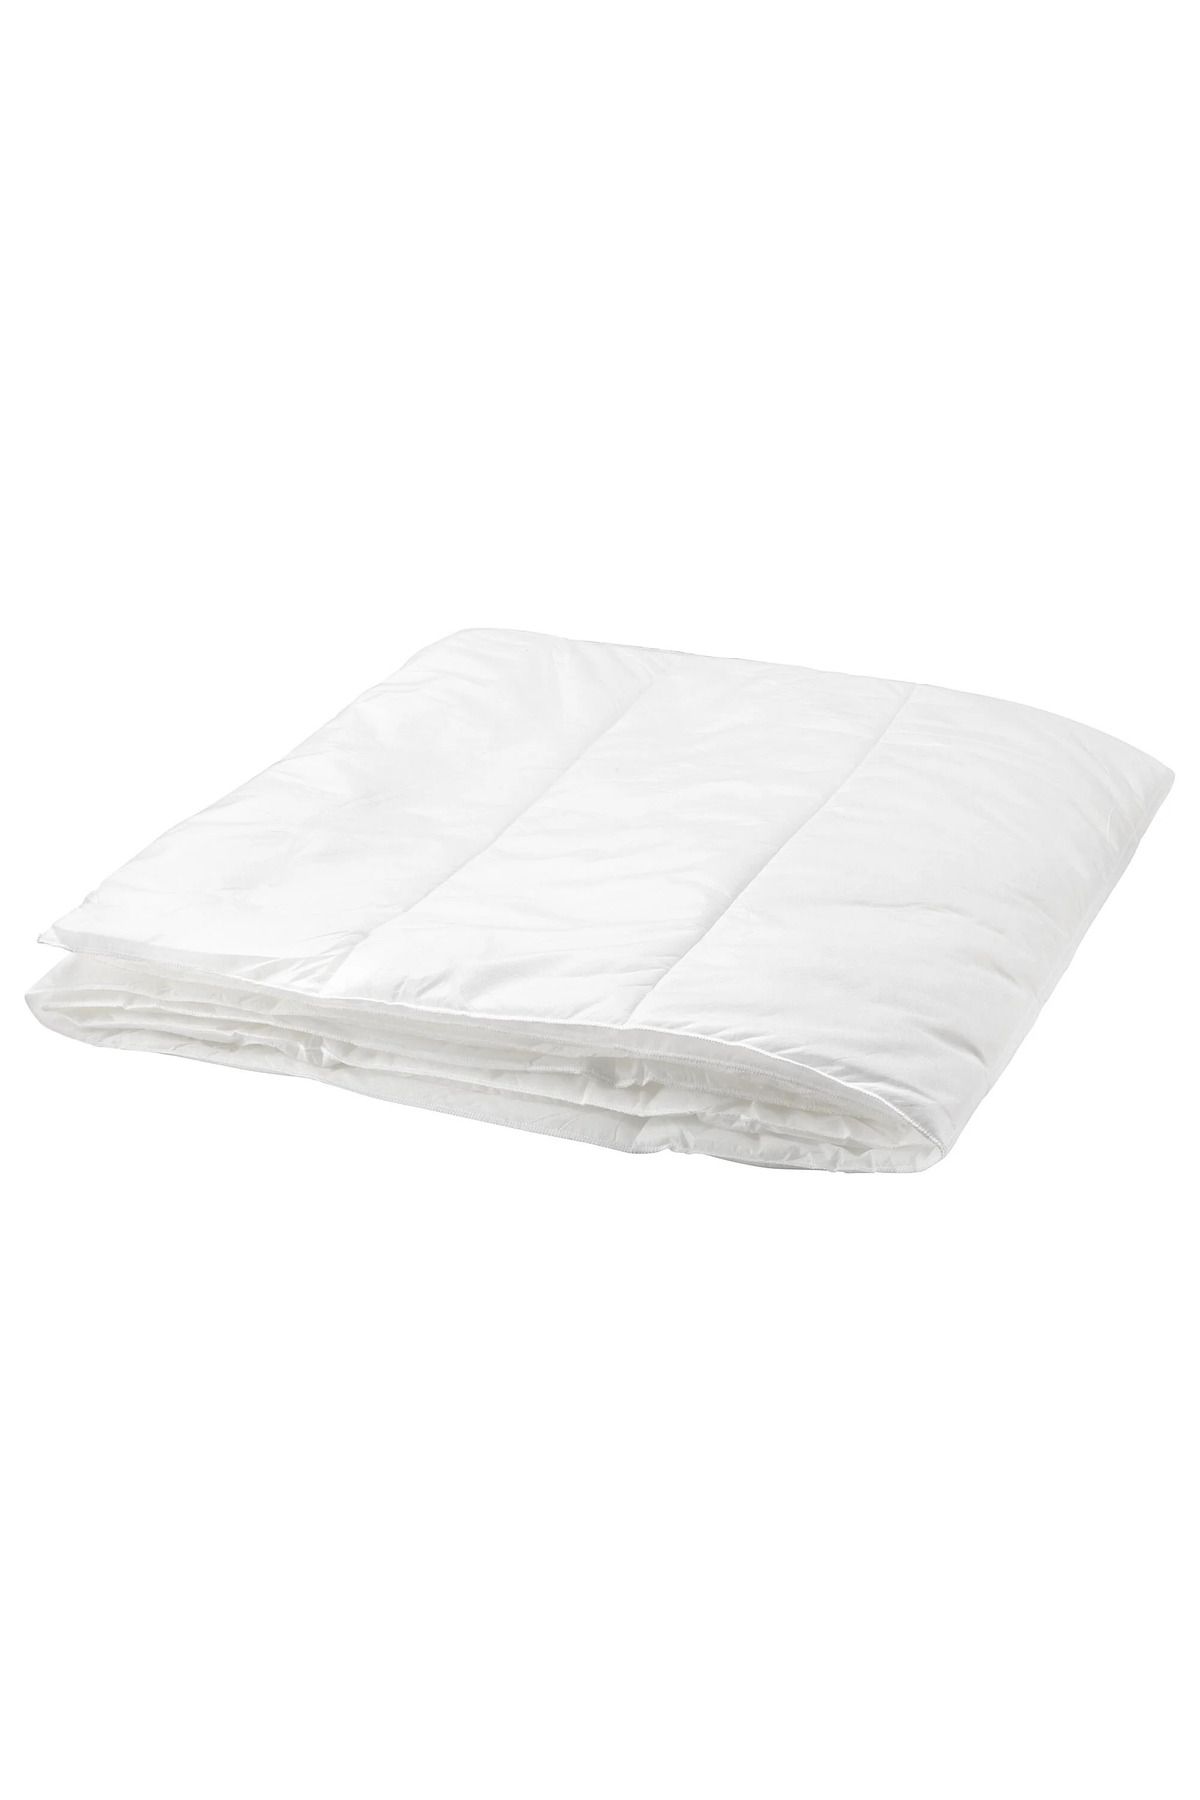 IKEA tek kişilik yorgan, beyaz, 150x200 cm, hafif sıcak tutar